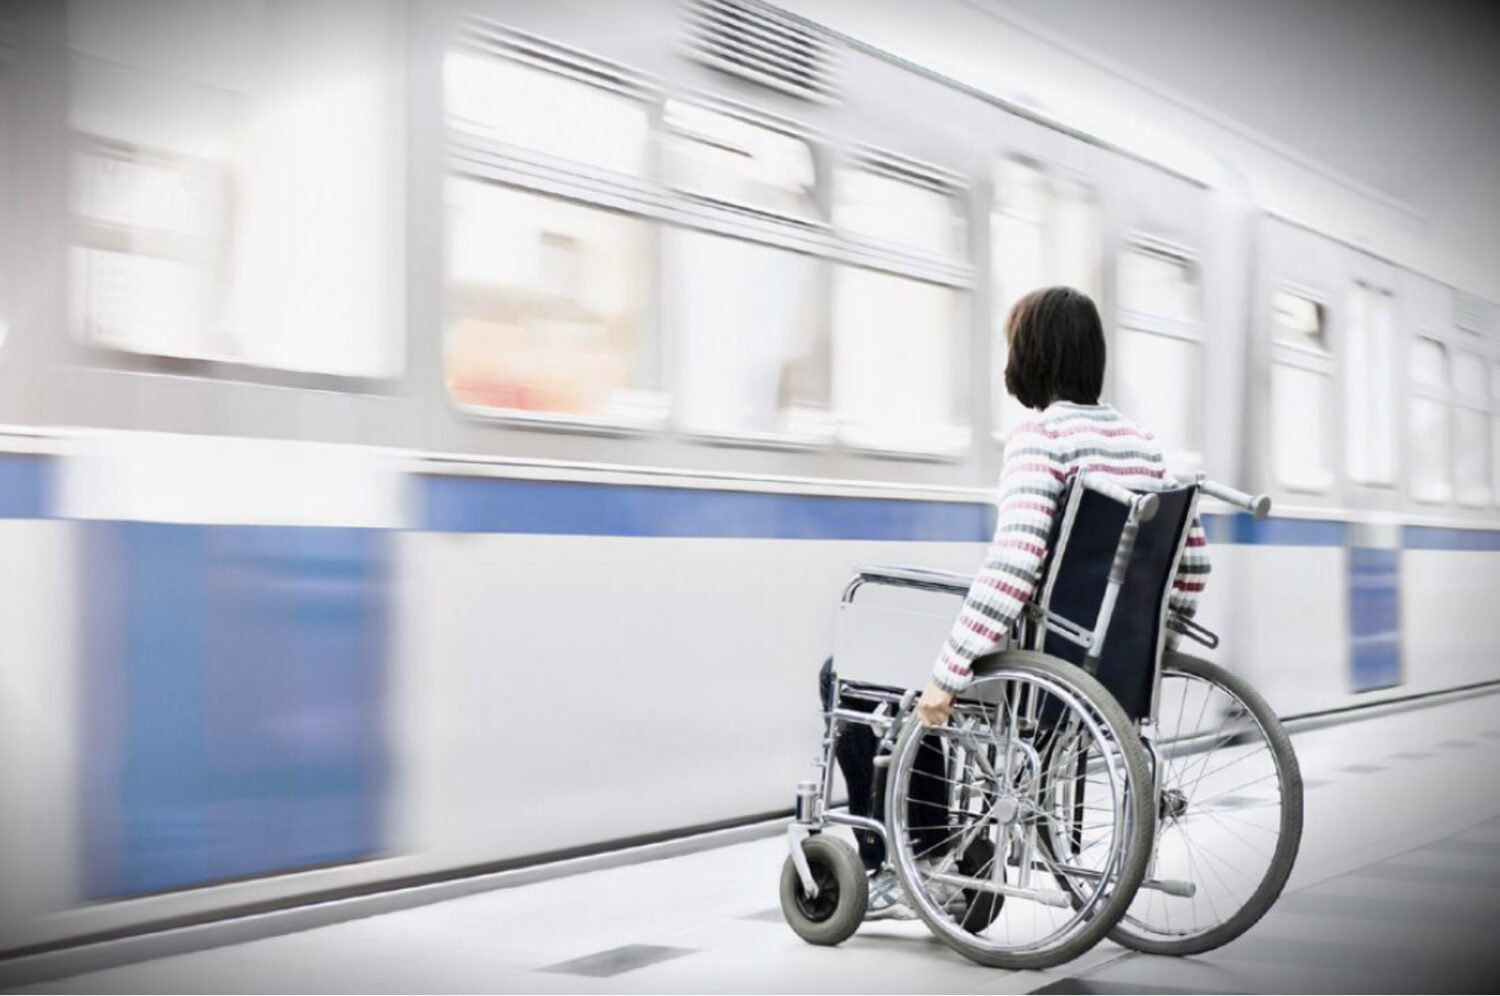 Билеты для инвалидов 1 группы. Маломобильные пассажиры на Железнодорожном транспорте. Транспорт для инвалидов колясочников. Транспорт для маломобильных людей. Доступная среда для инвалидов колясочников.